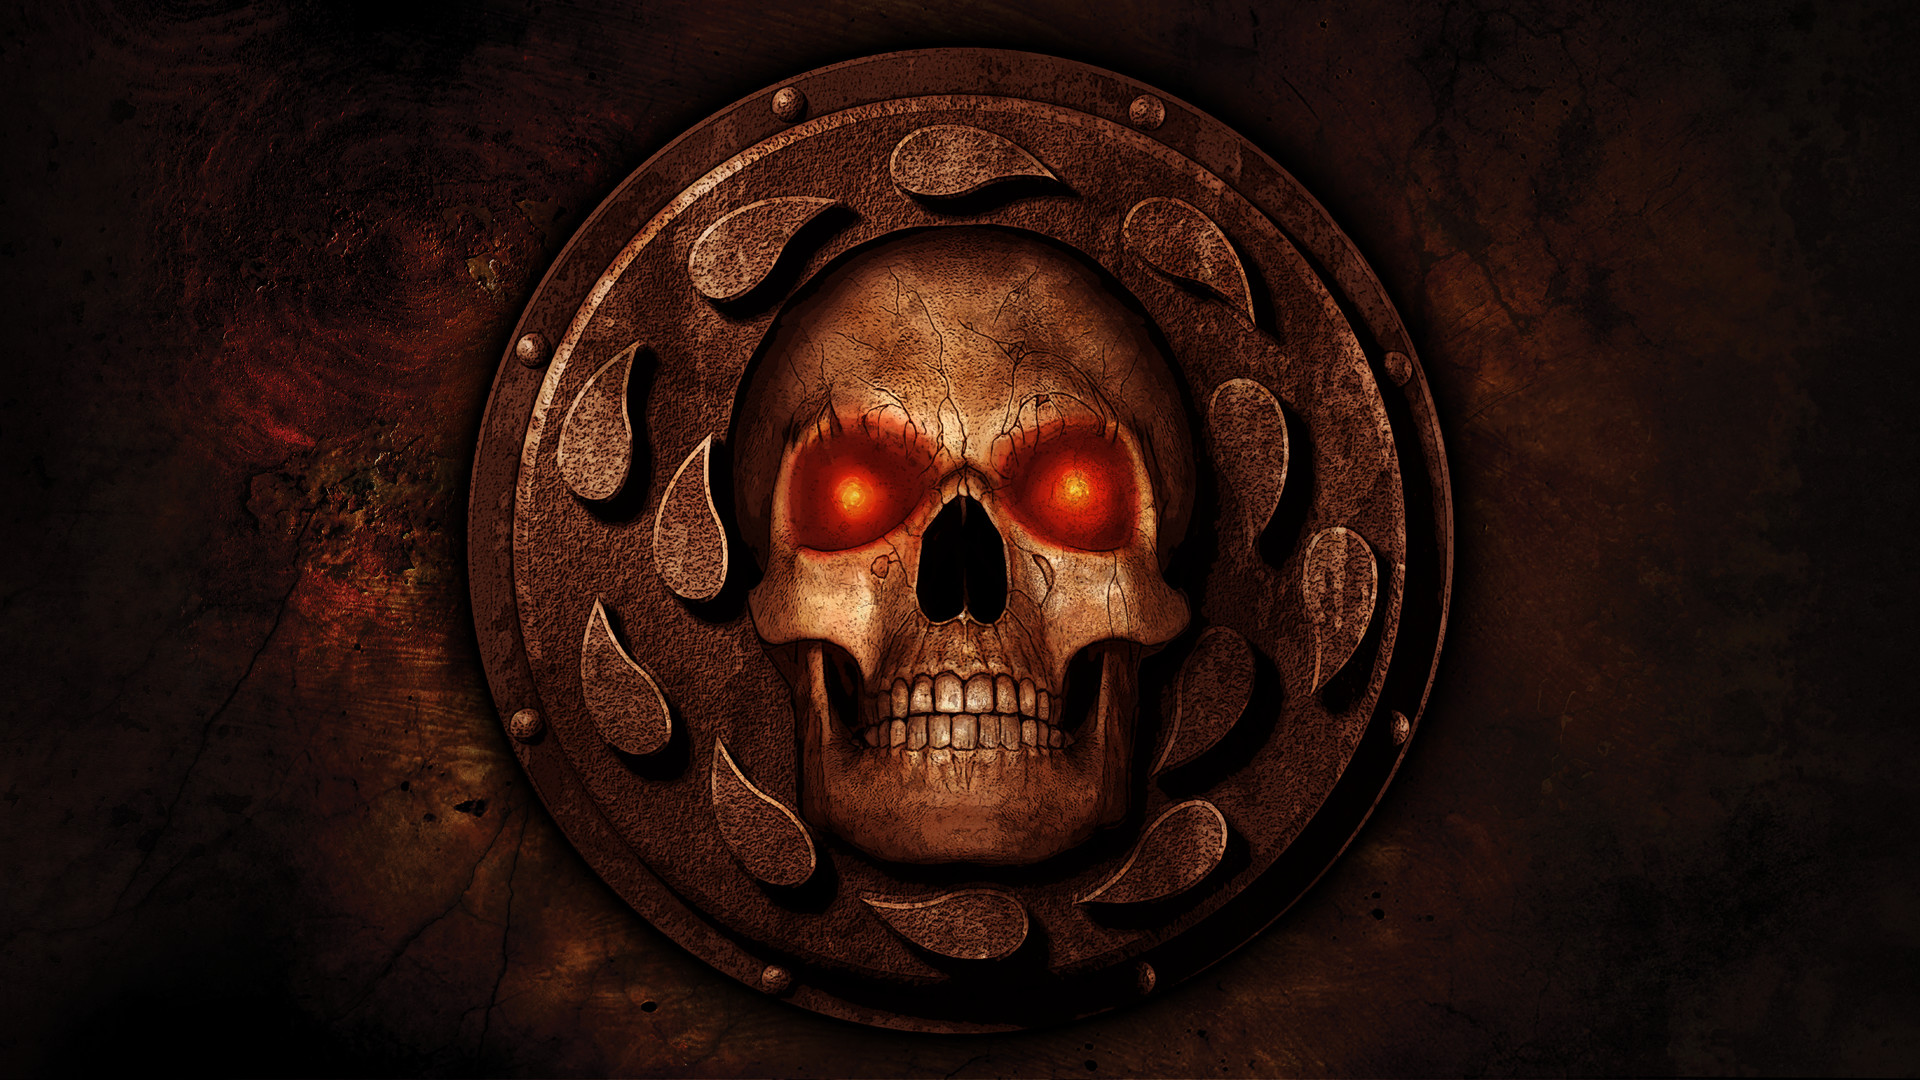 Baldur's Gate II: Enhanced Edition Official Soundtrack Featured Screenshot #1